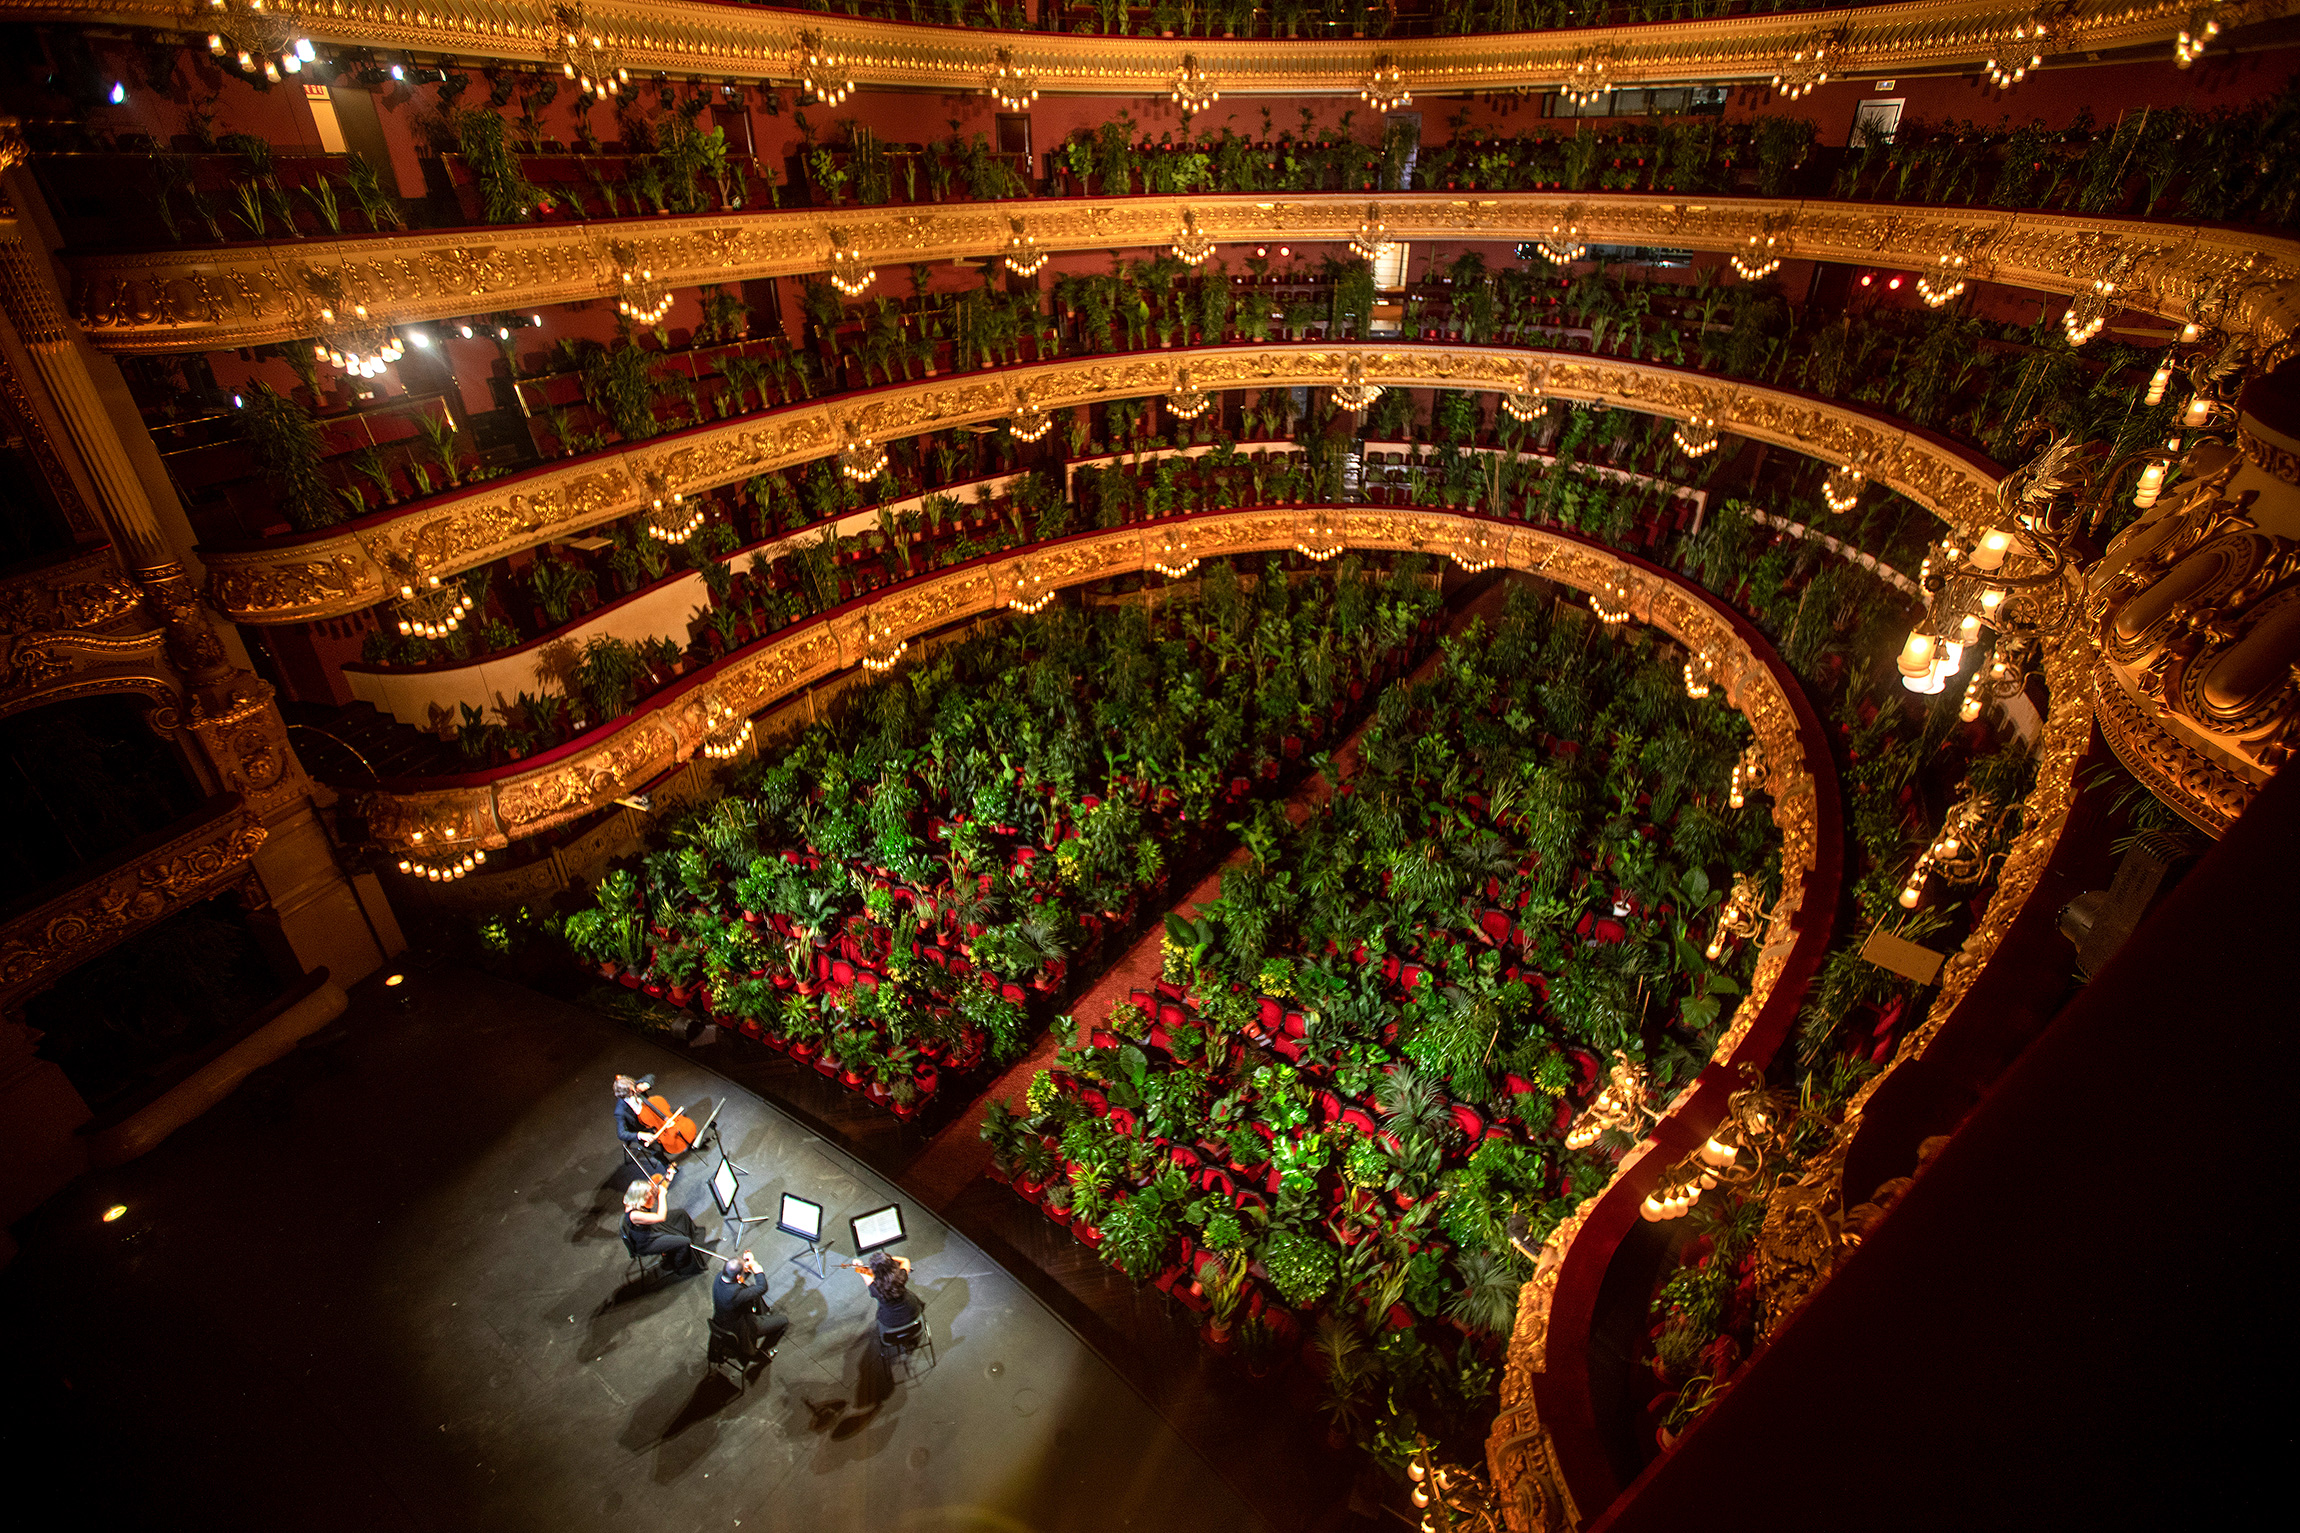 22 июня. Барселона, Испания. Музыканты репетируют в Гран театро дель Лисео для онлайн-концерта. 2,3 тыс. мест в зрительном зале занимают растения, привезенные из местных детских садов